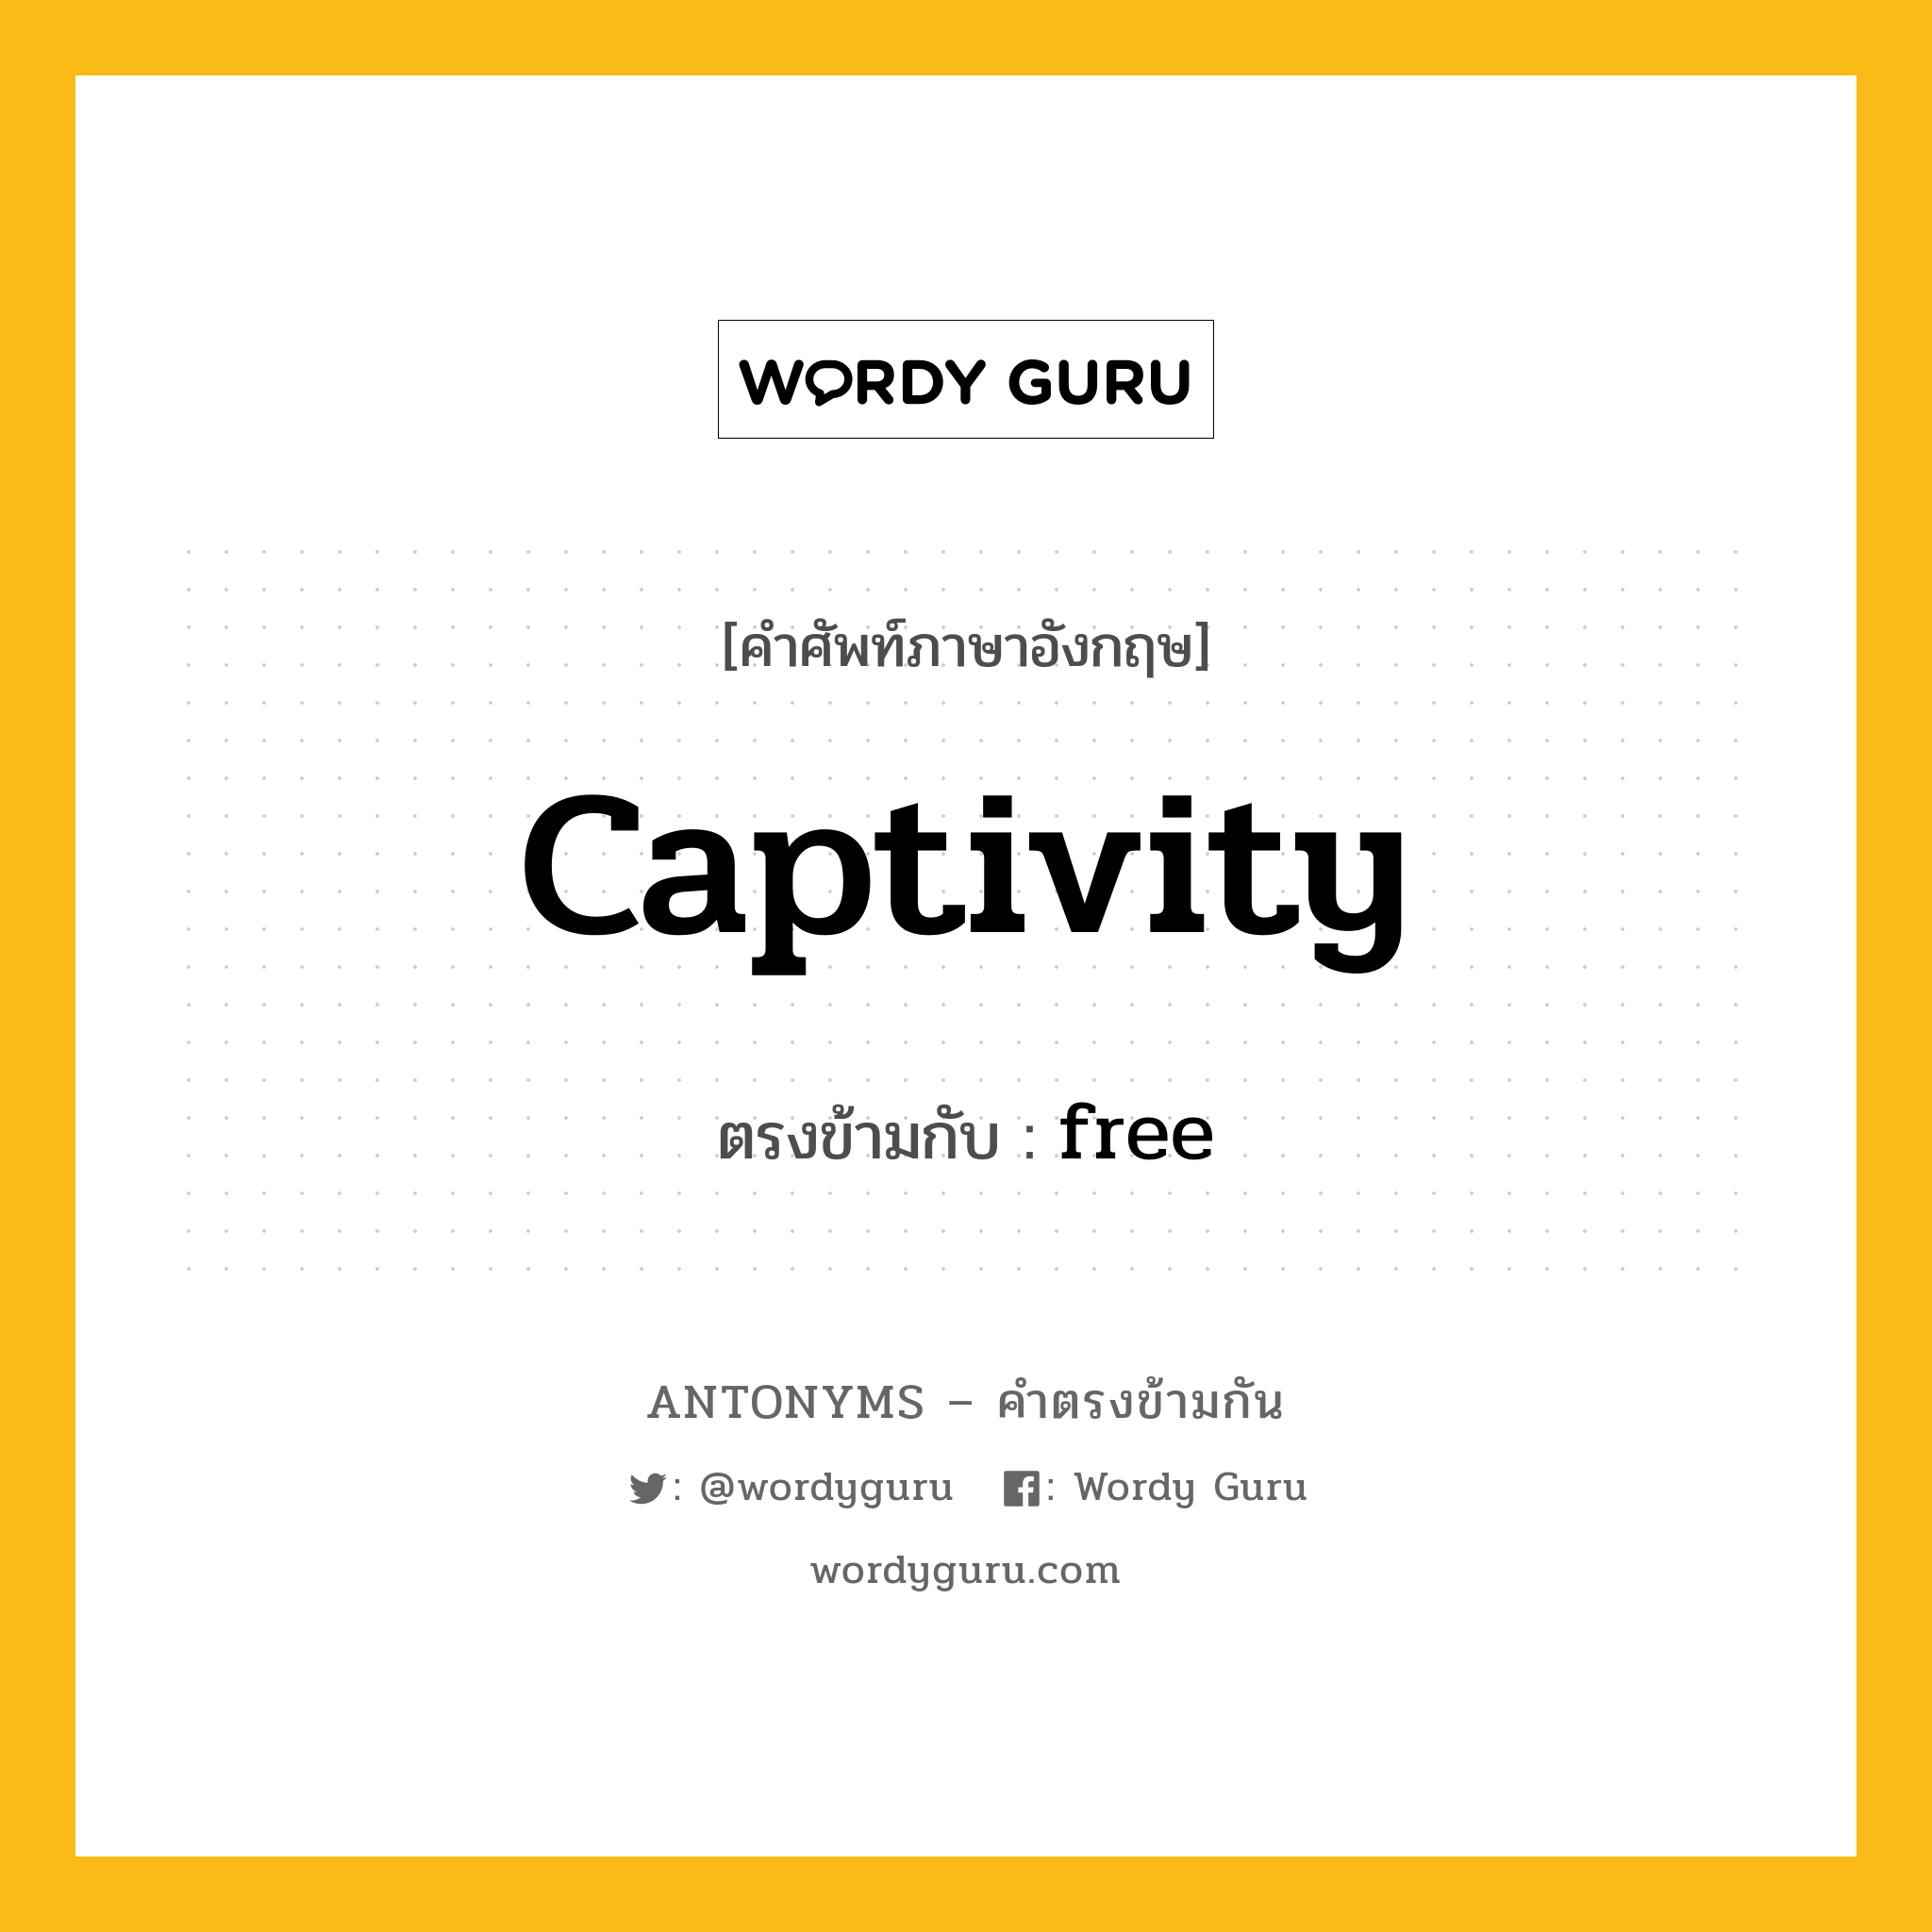 captivity เป็นคำตรงข้ามกับคำไหนบ้าง?, คำศัพท์ภาษาอังกฤษ captivity ตรงข้ามกับ free หมวด free